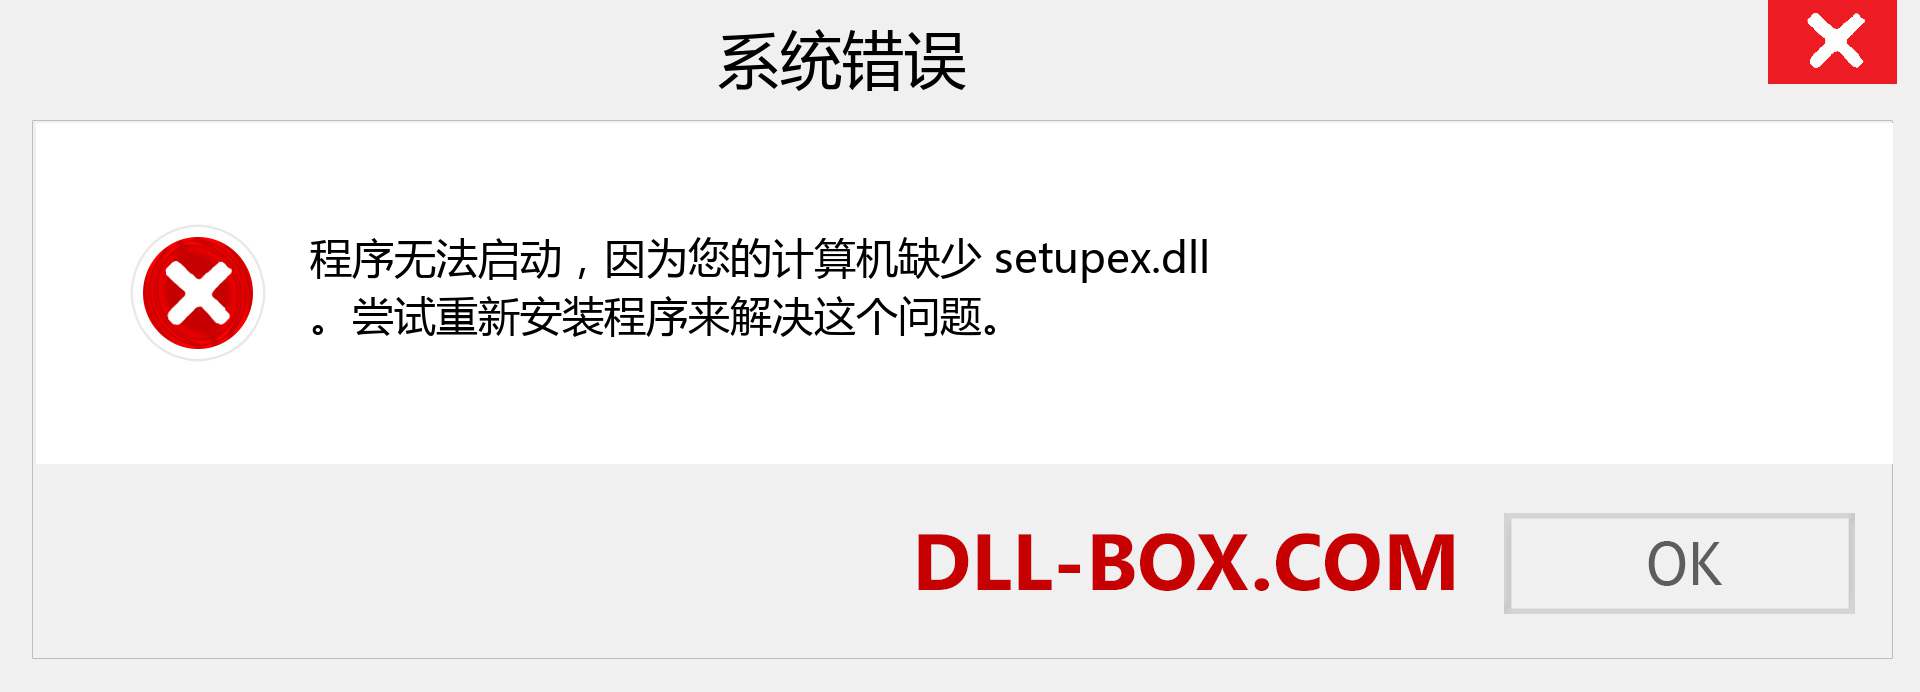 setupex.dll 文件丢失？。 适用于 Windows 7、8、10 的下载 - 修复 Windows、照片、图像上的 setupex dll 丢失错误